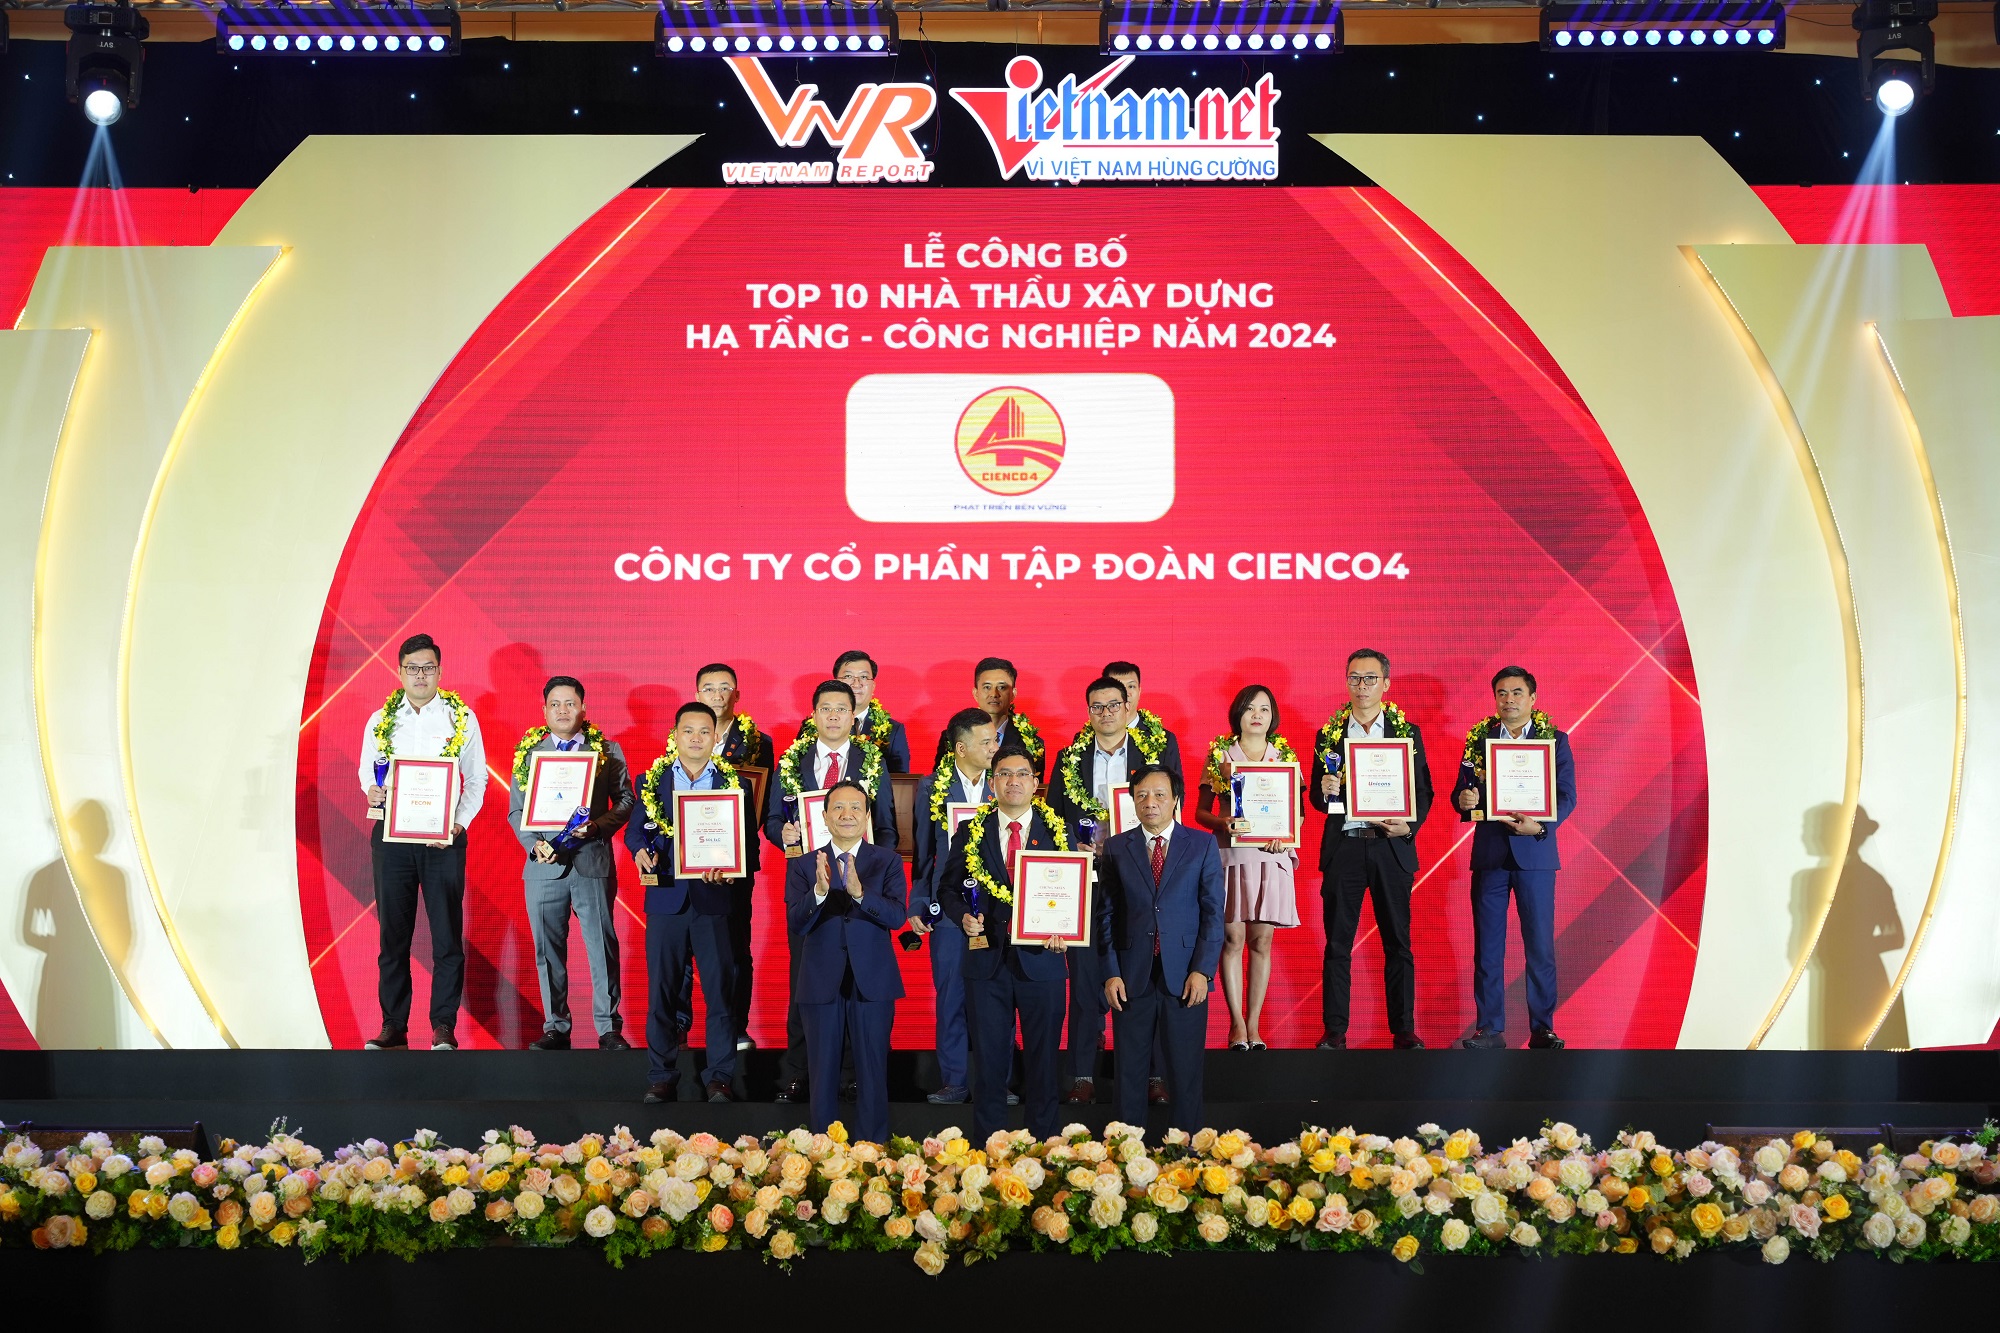 ROX Cons nhận cú đúp giải thưởng từ Vietnam Report